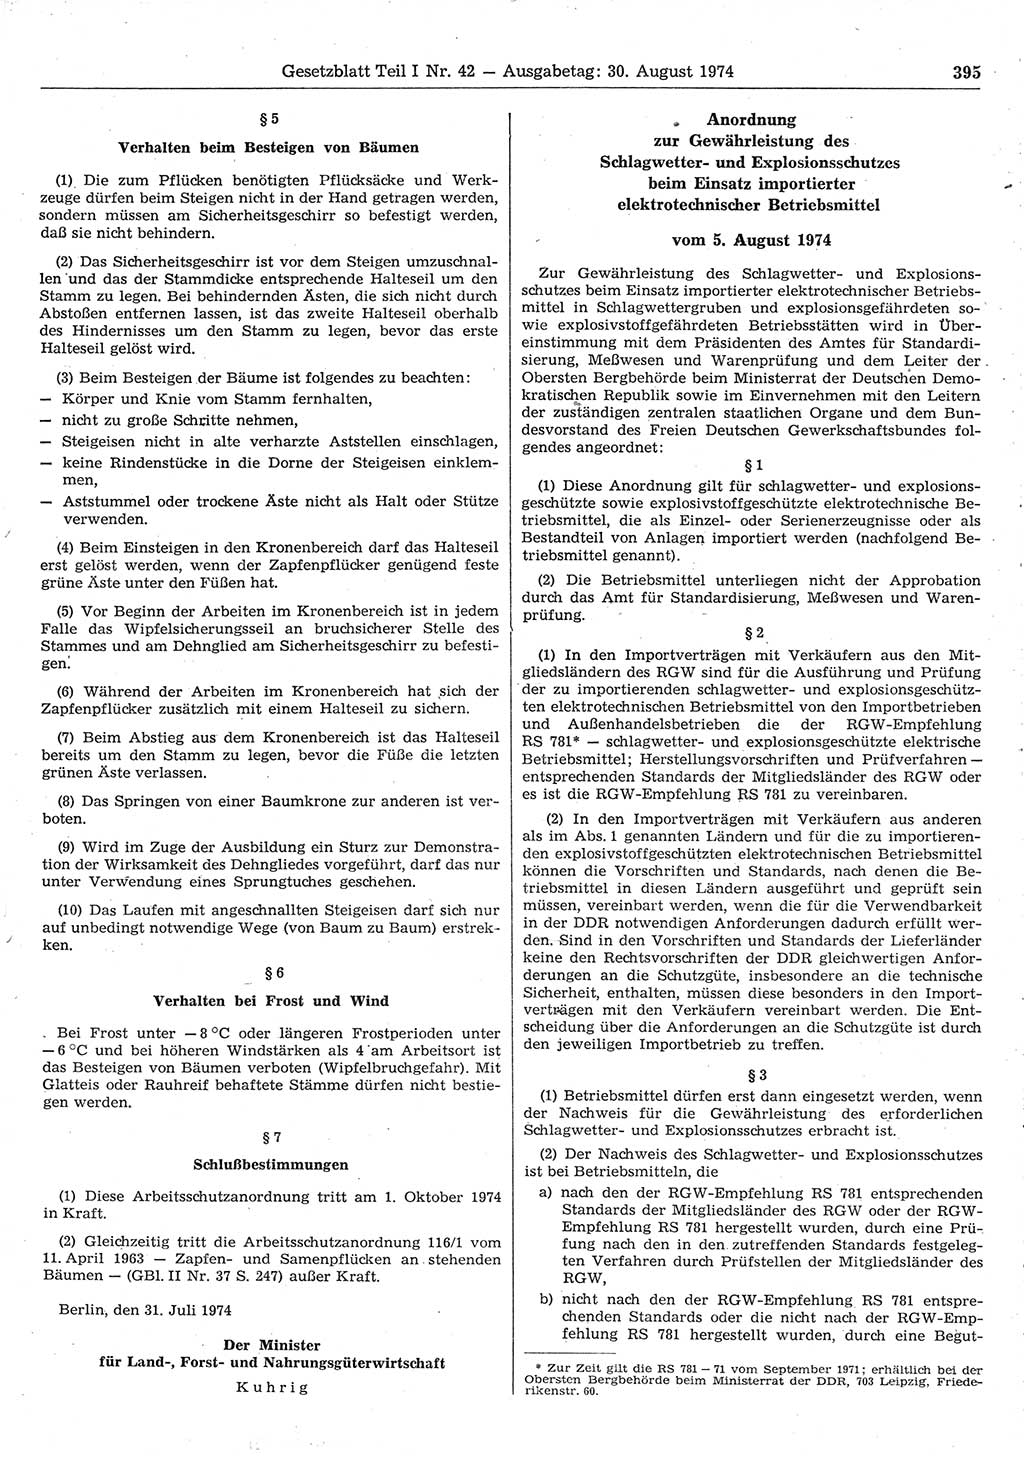 Gesetzblatt (GBl.) der Deutschen Demokratischen Republik (DDR) Teil Ⅰ 1974, Seite 395 (GBl. DDR Ⅰ 1974, S. 395)